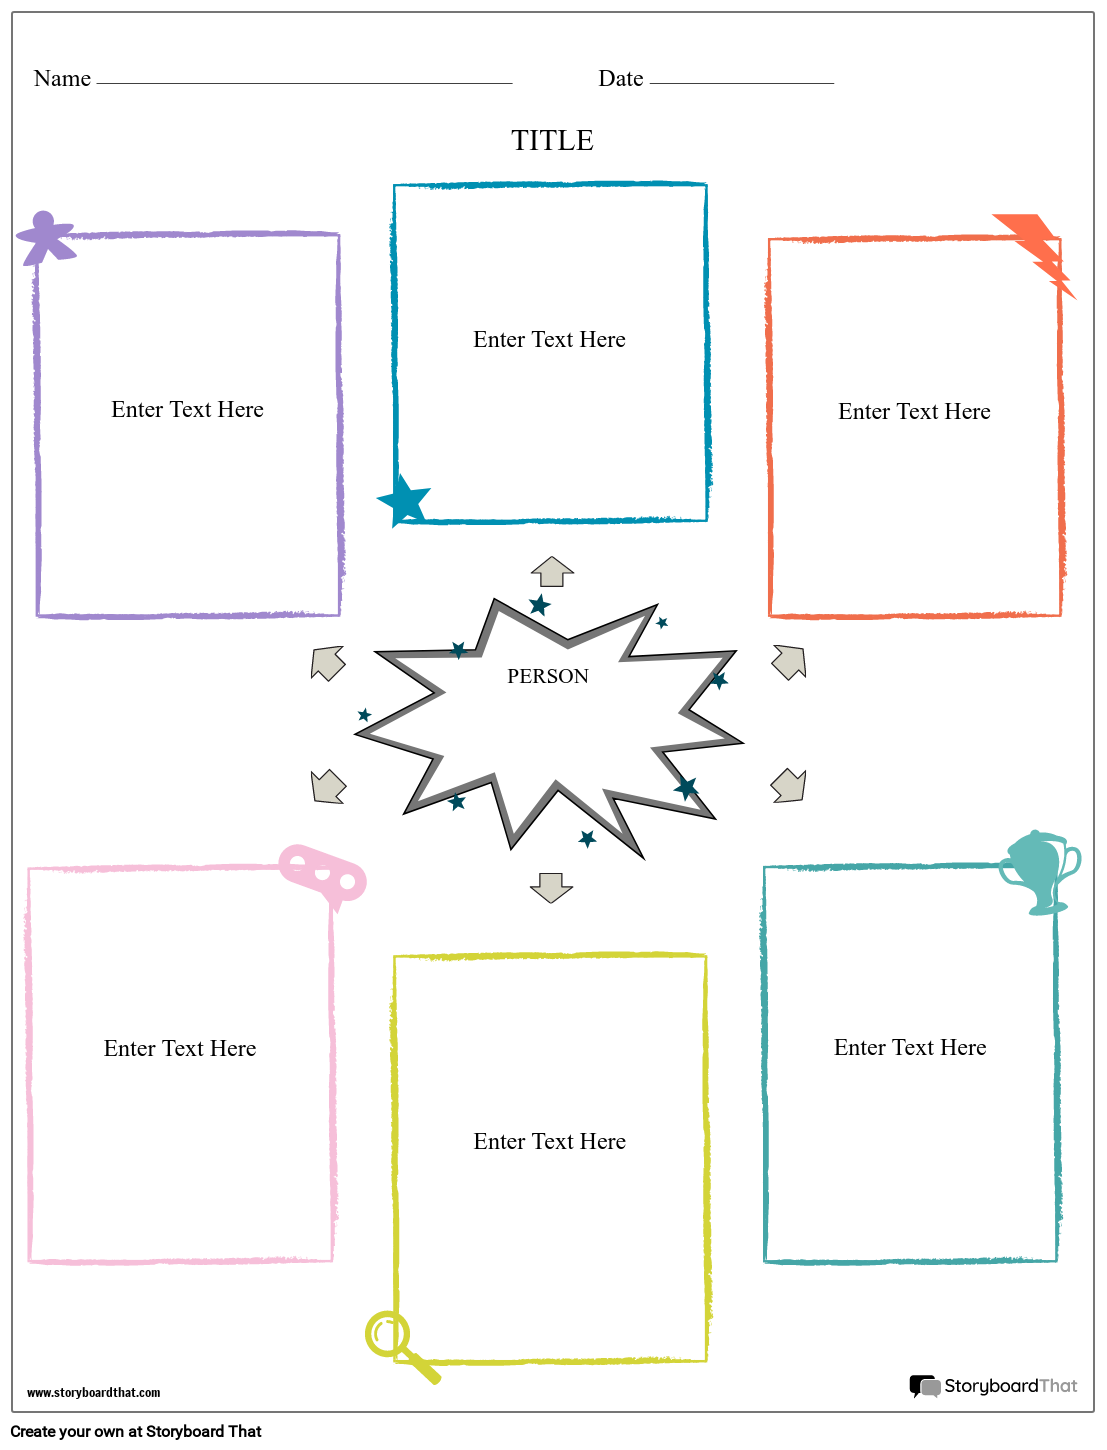 bio-graphic-organizer-portrait-storyboard-by-worksheet-templates